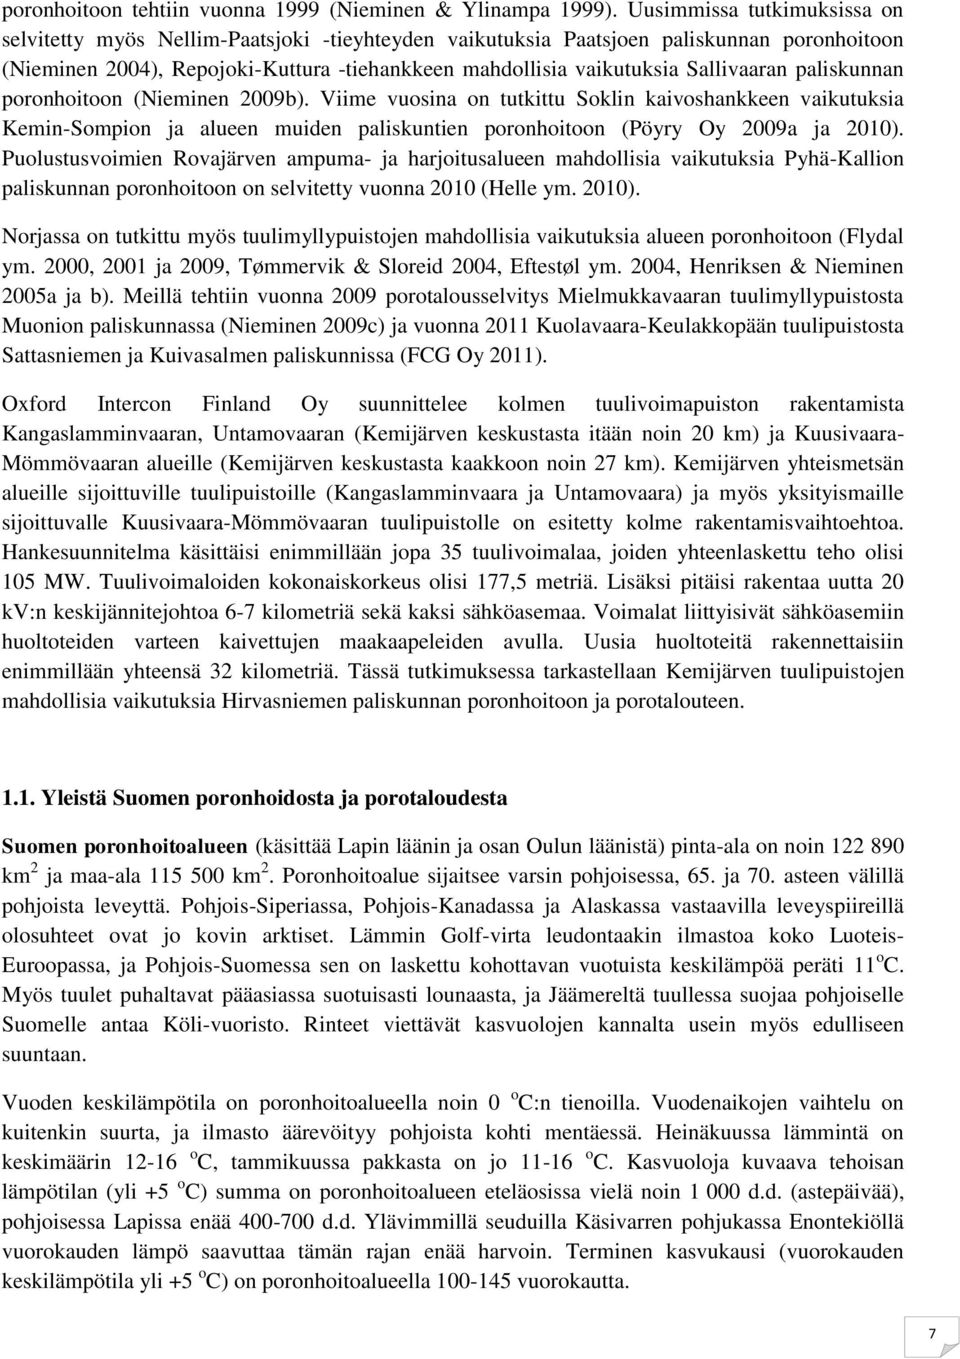 Sallivaaran paliskunnan poronhoitoon (Nieminen 2009b). Viime vuosina on tutkittu Soklin kaivoshankkeen vaikutuksia Kemin-Sompion ja alueen muiden paliskuntien poronhoitoon (Pöyry Oy 2009a ja 2010).